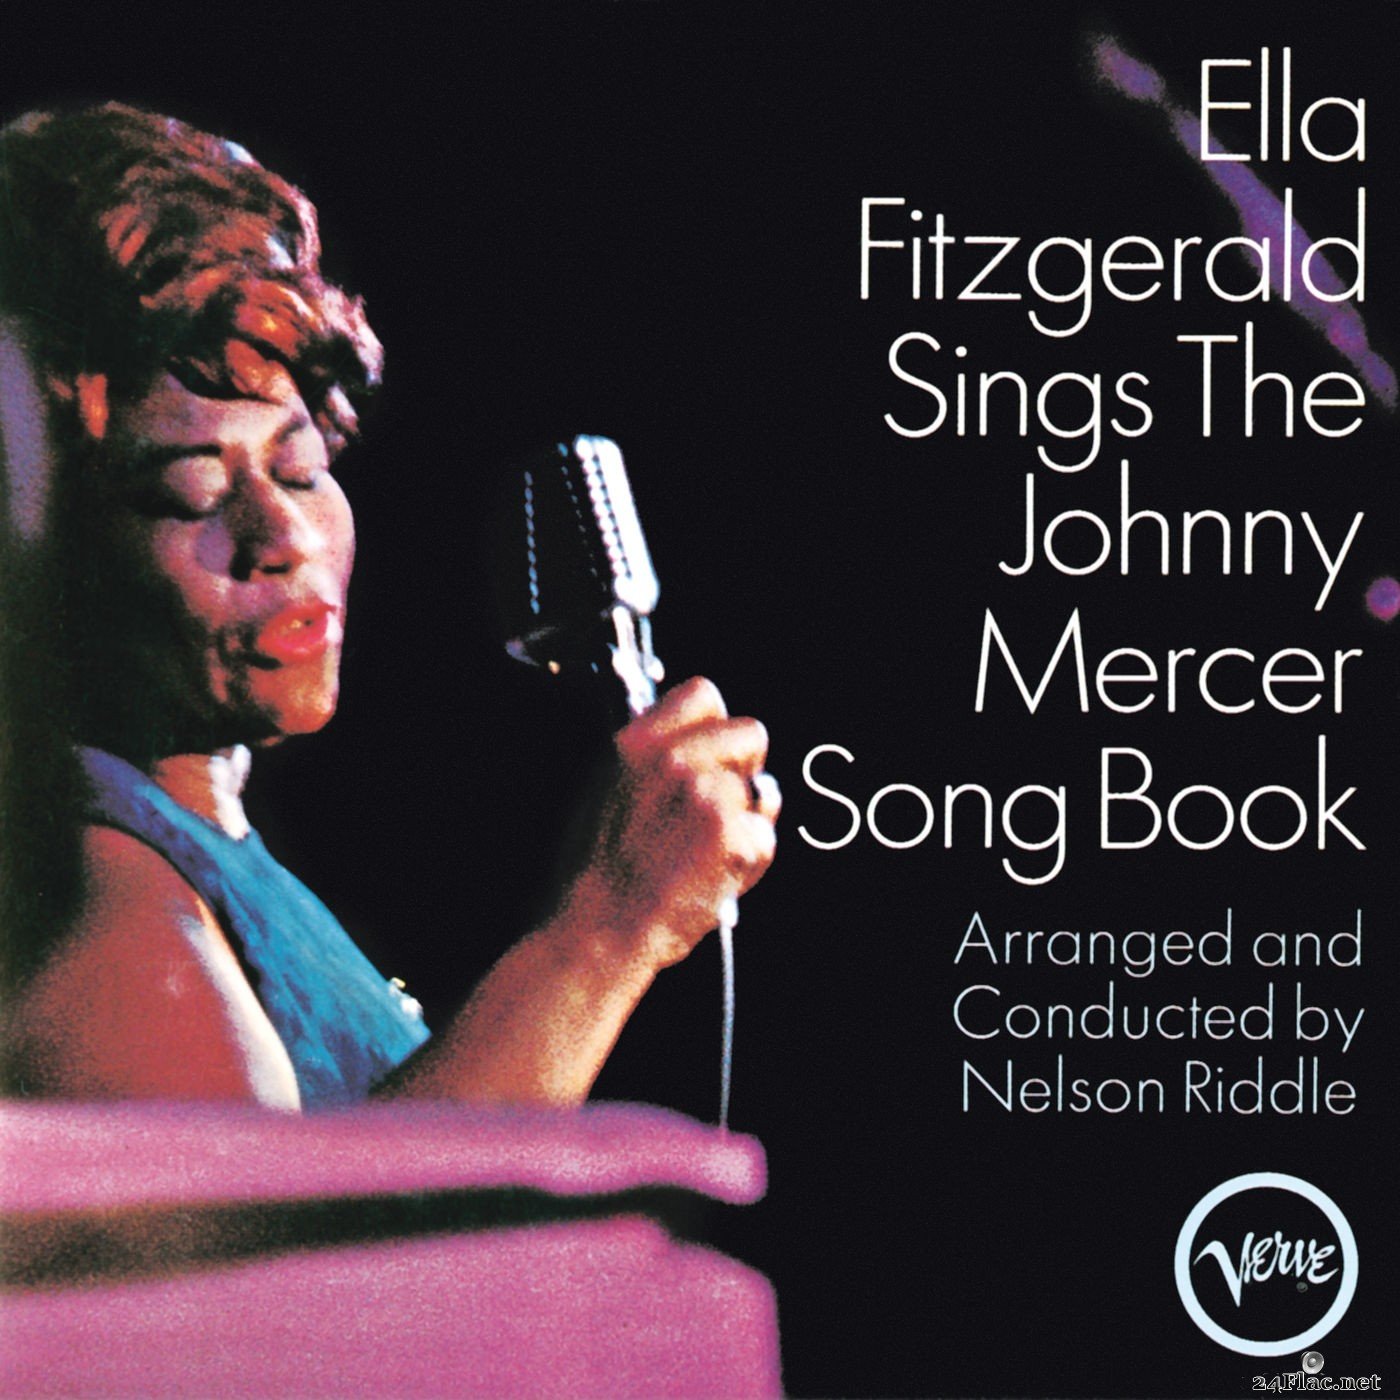 Ella Fitzgerald - Ella Fitzgerald Sings The Johnny Mercer Song Book (2013) Hi-Res